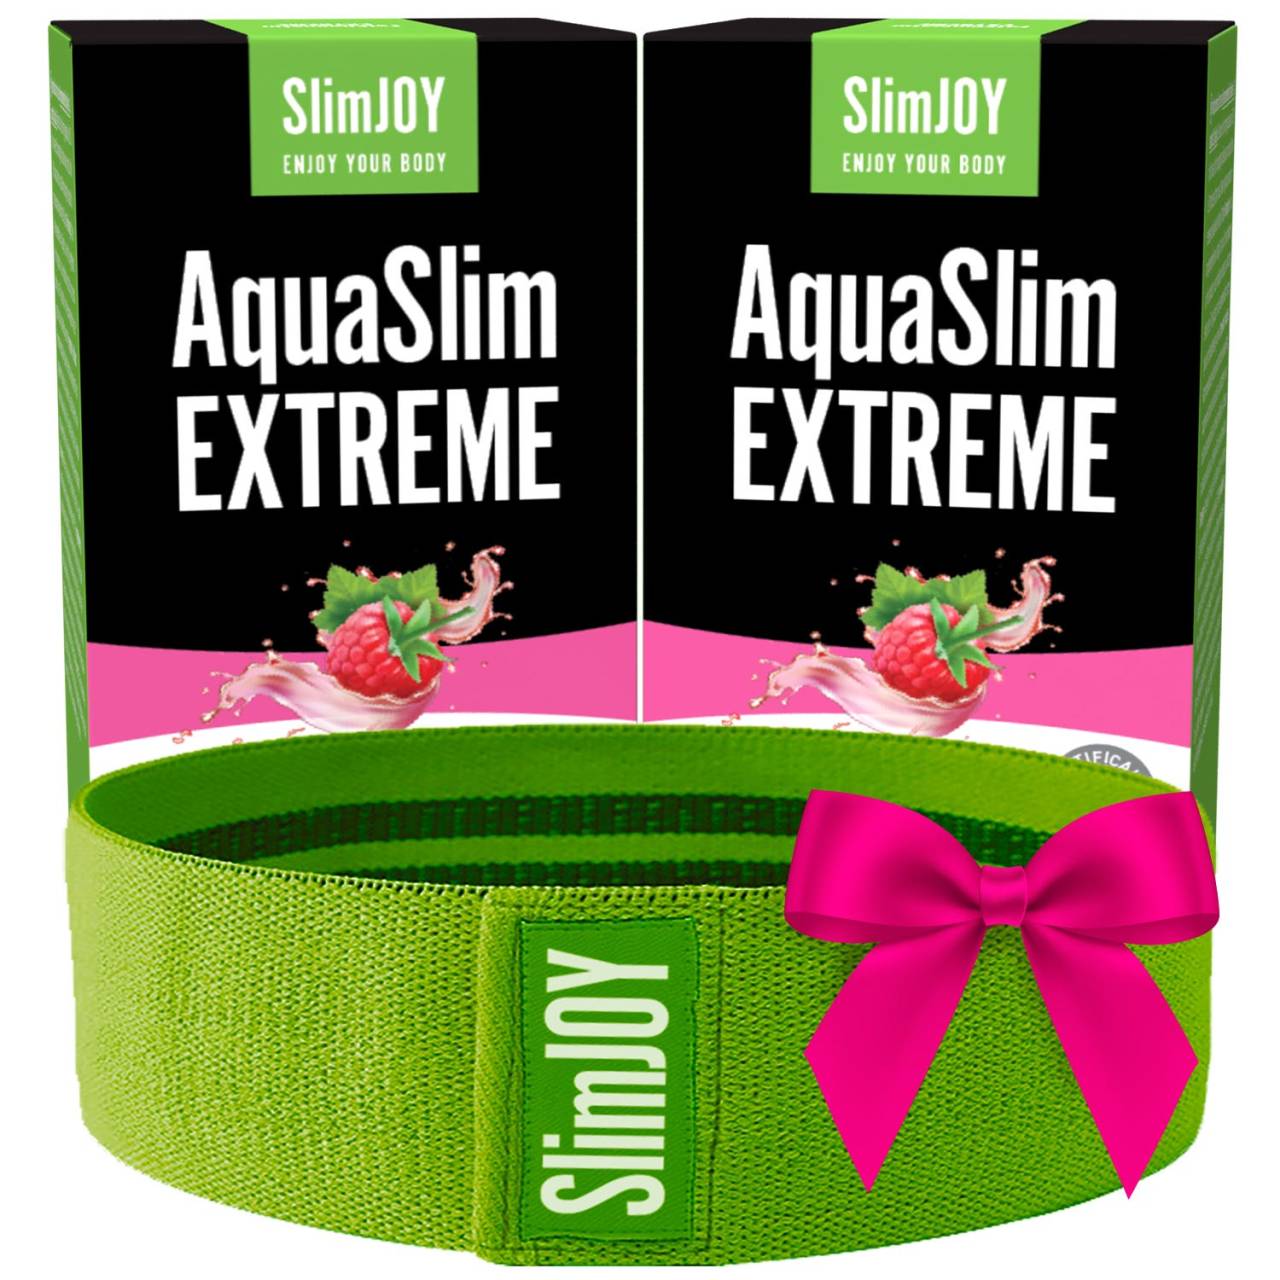 2x AquaSlim EXTREME + Bande de résistance GRATUIT | Réduit la rétention d'eau pour une perte de poids rapide | 20 jours de programme | SlimJOY.